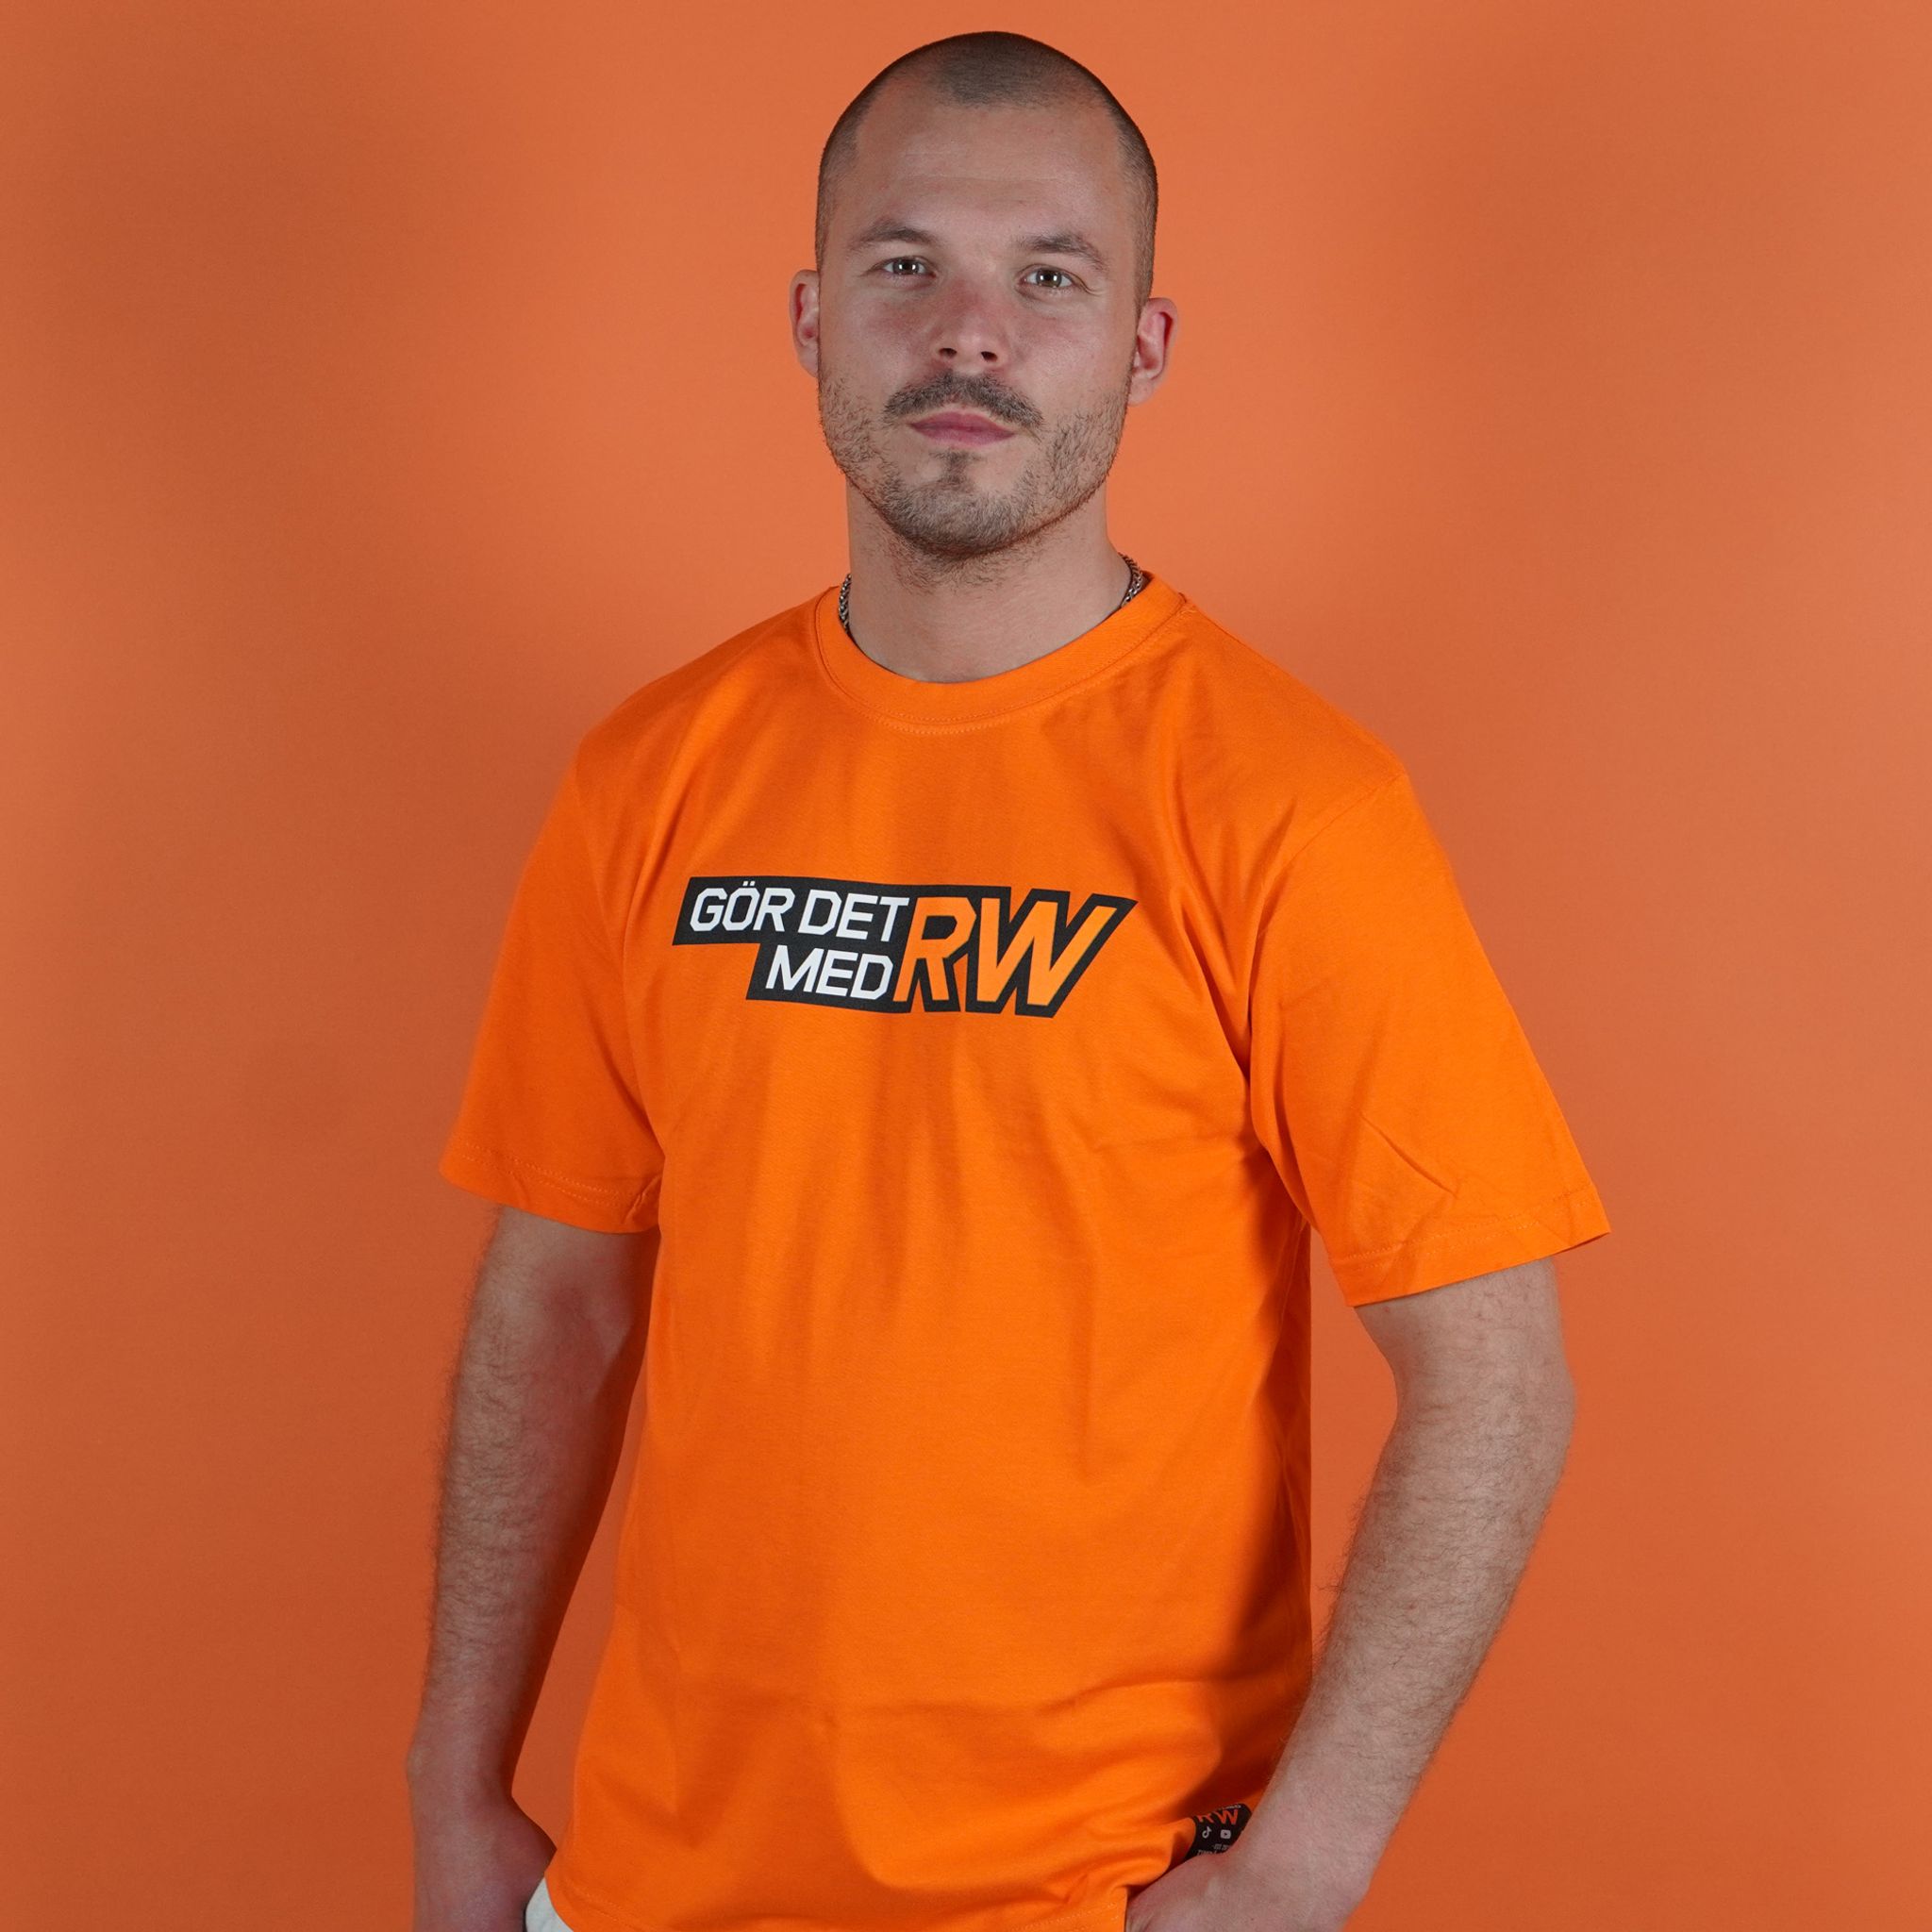 T-shirt GörDetMedRW Orange